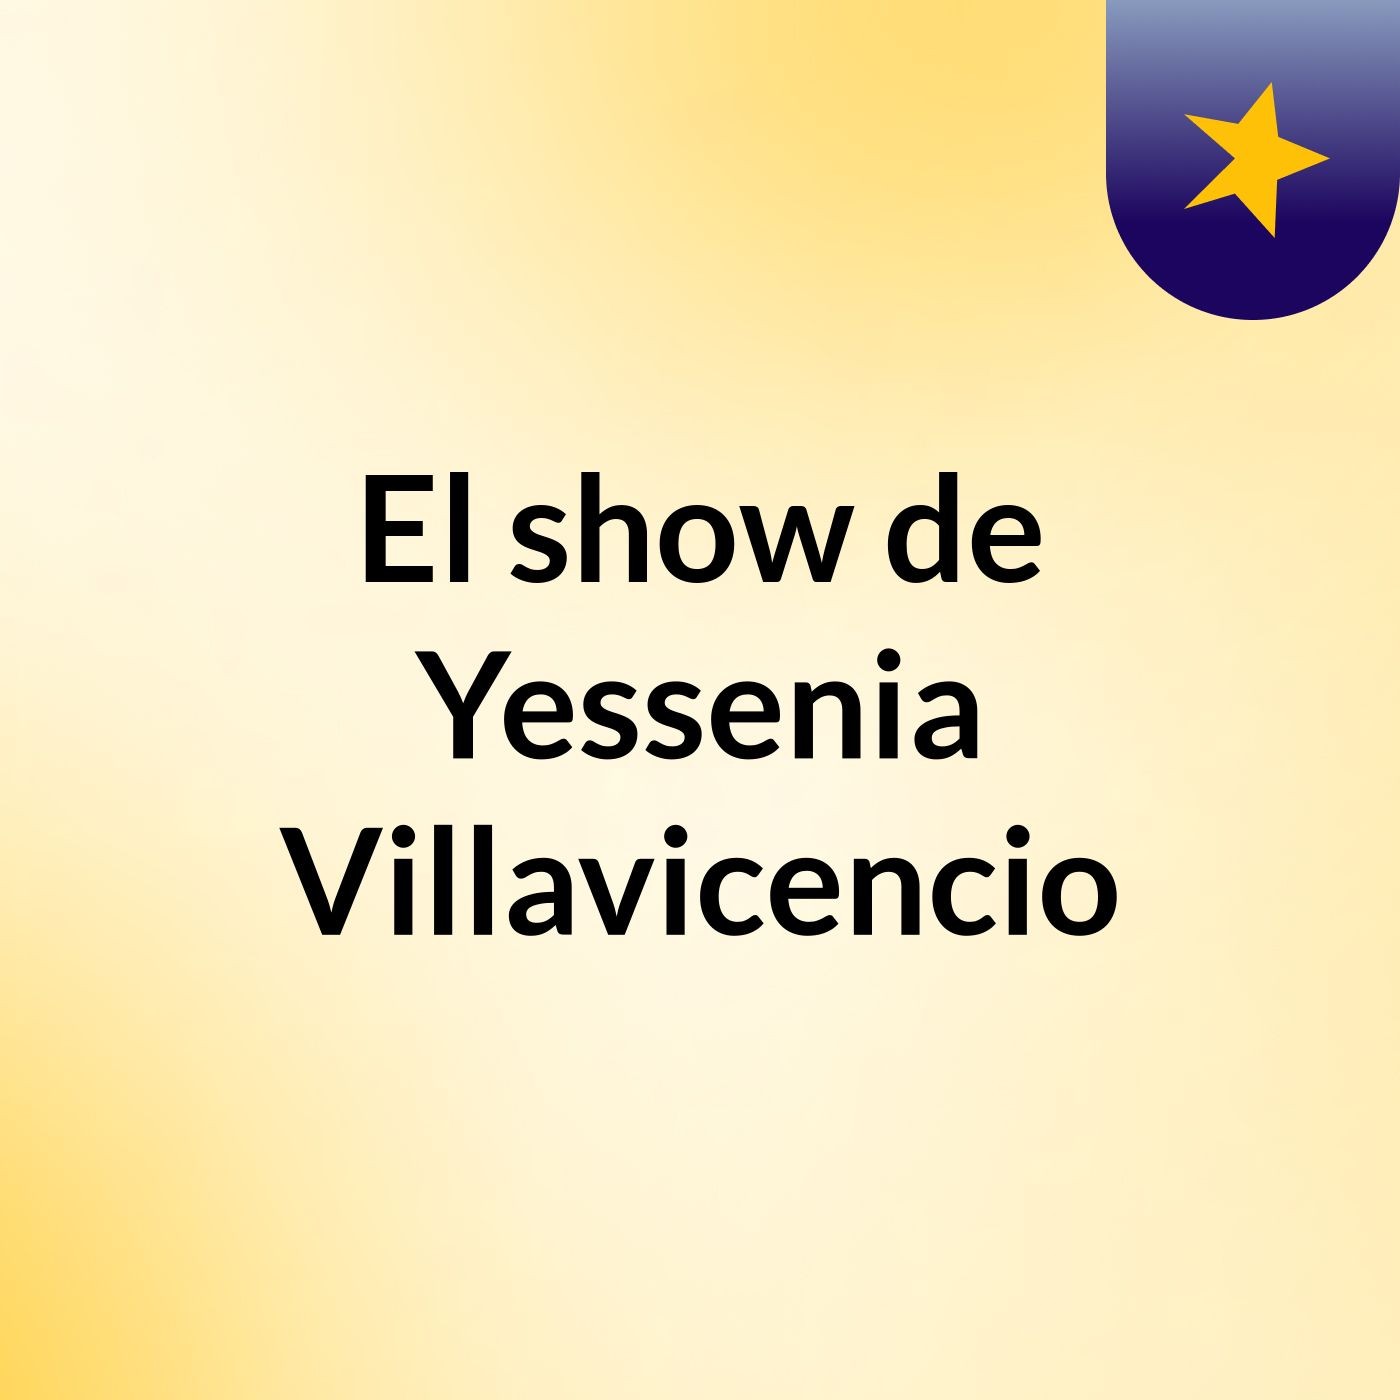 El show de Yessenia Villavicencio